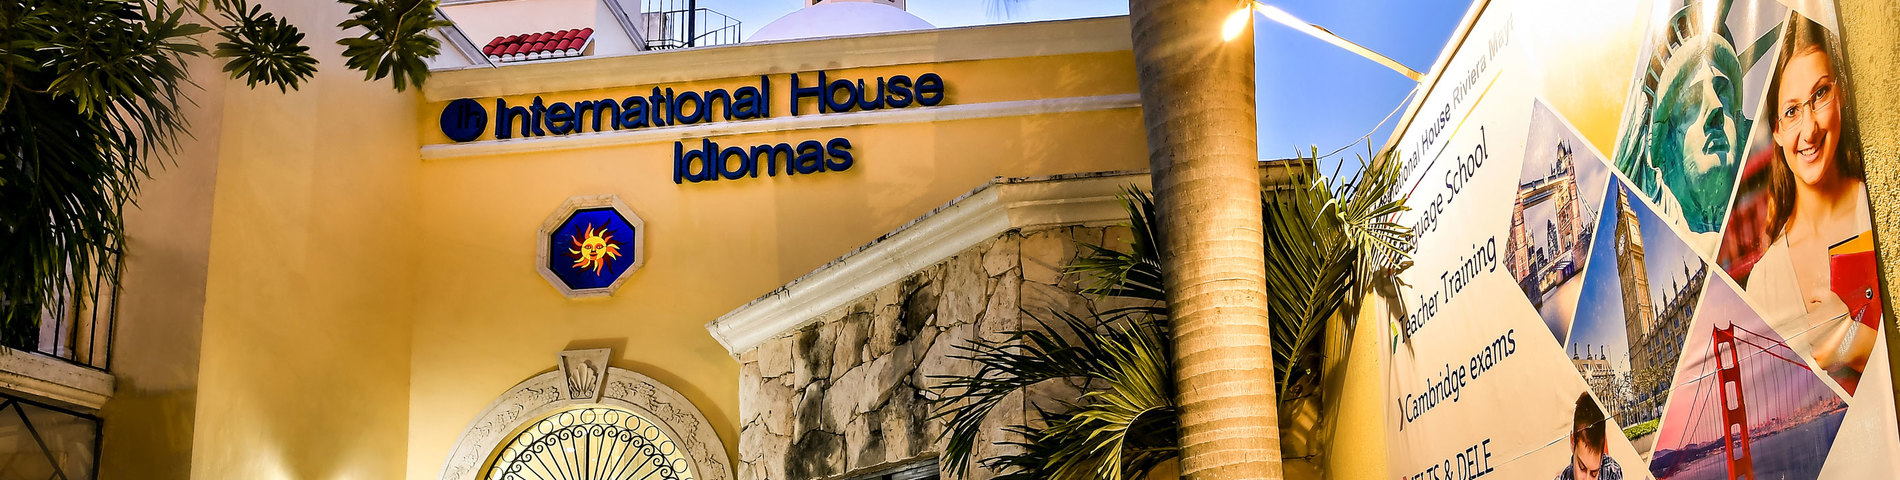 International House - Riviera Maya صورة 1